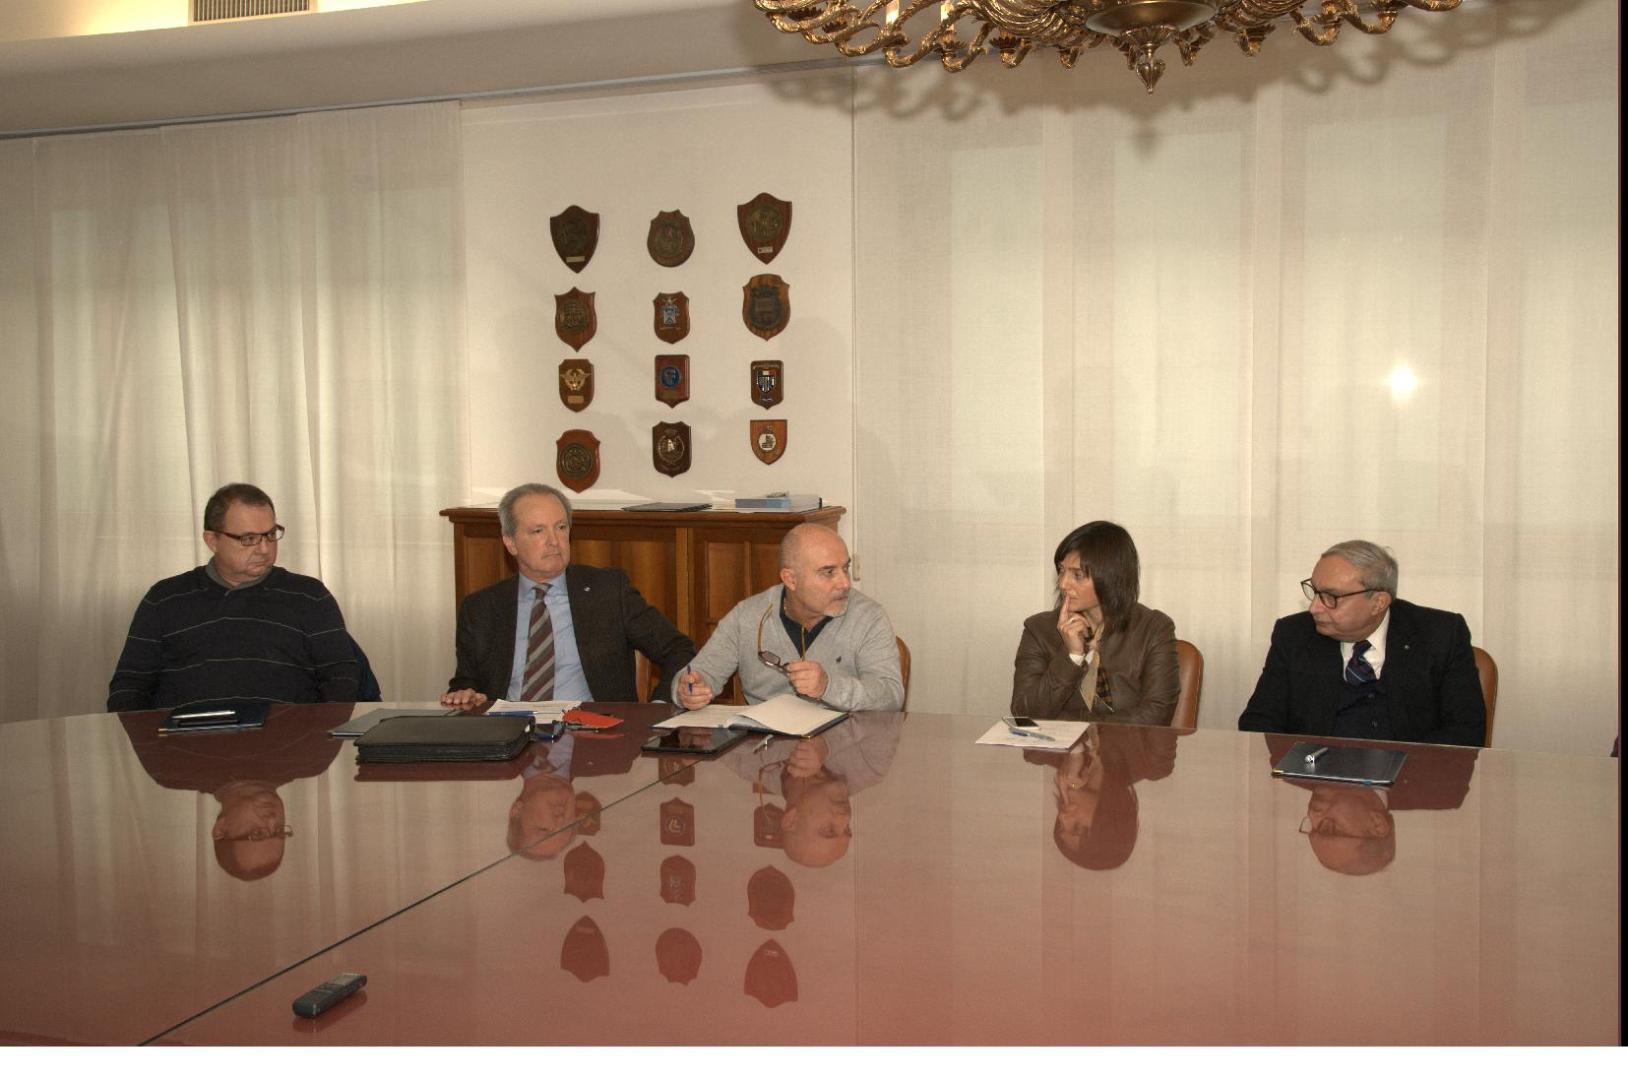 Accordo Fincantieri con Regione e sindacati per lo sviluppo del lavoro in Fvg